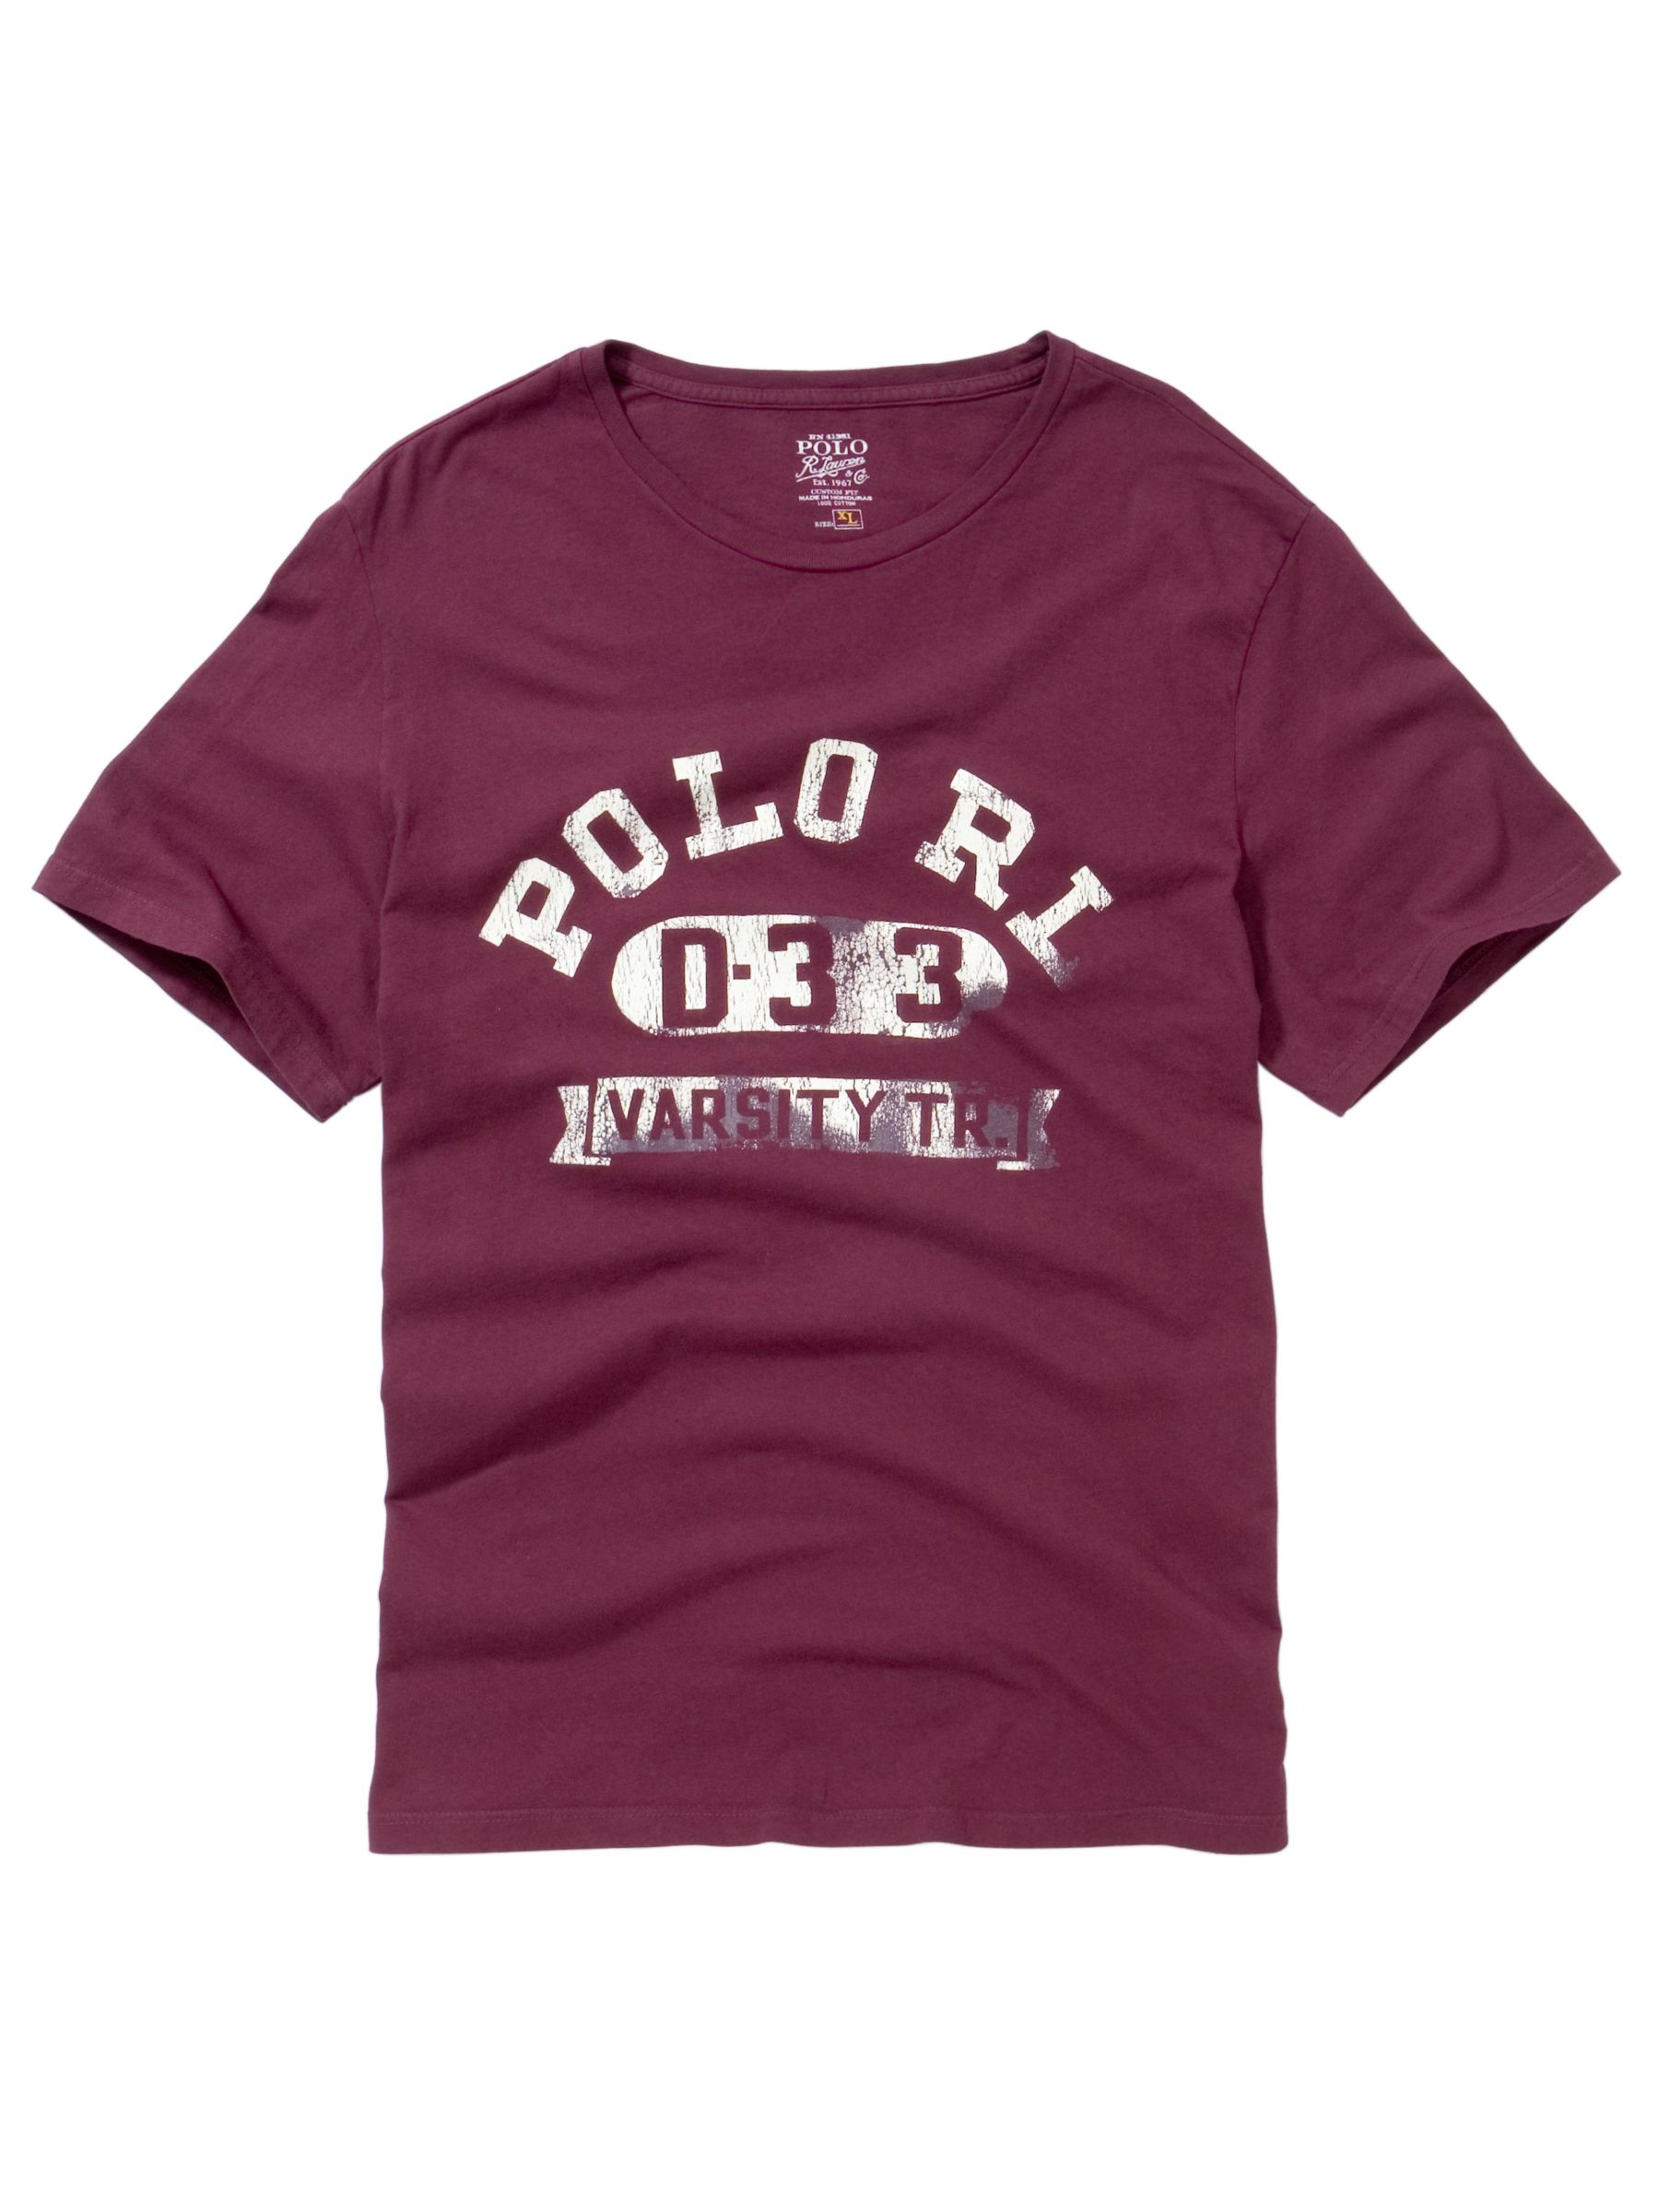 Polo Ralph Lauren Logo T-Shirt, Burgundy